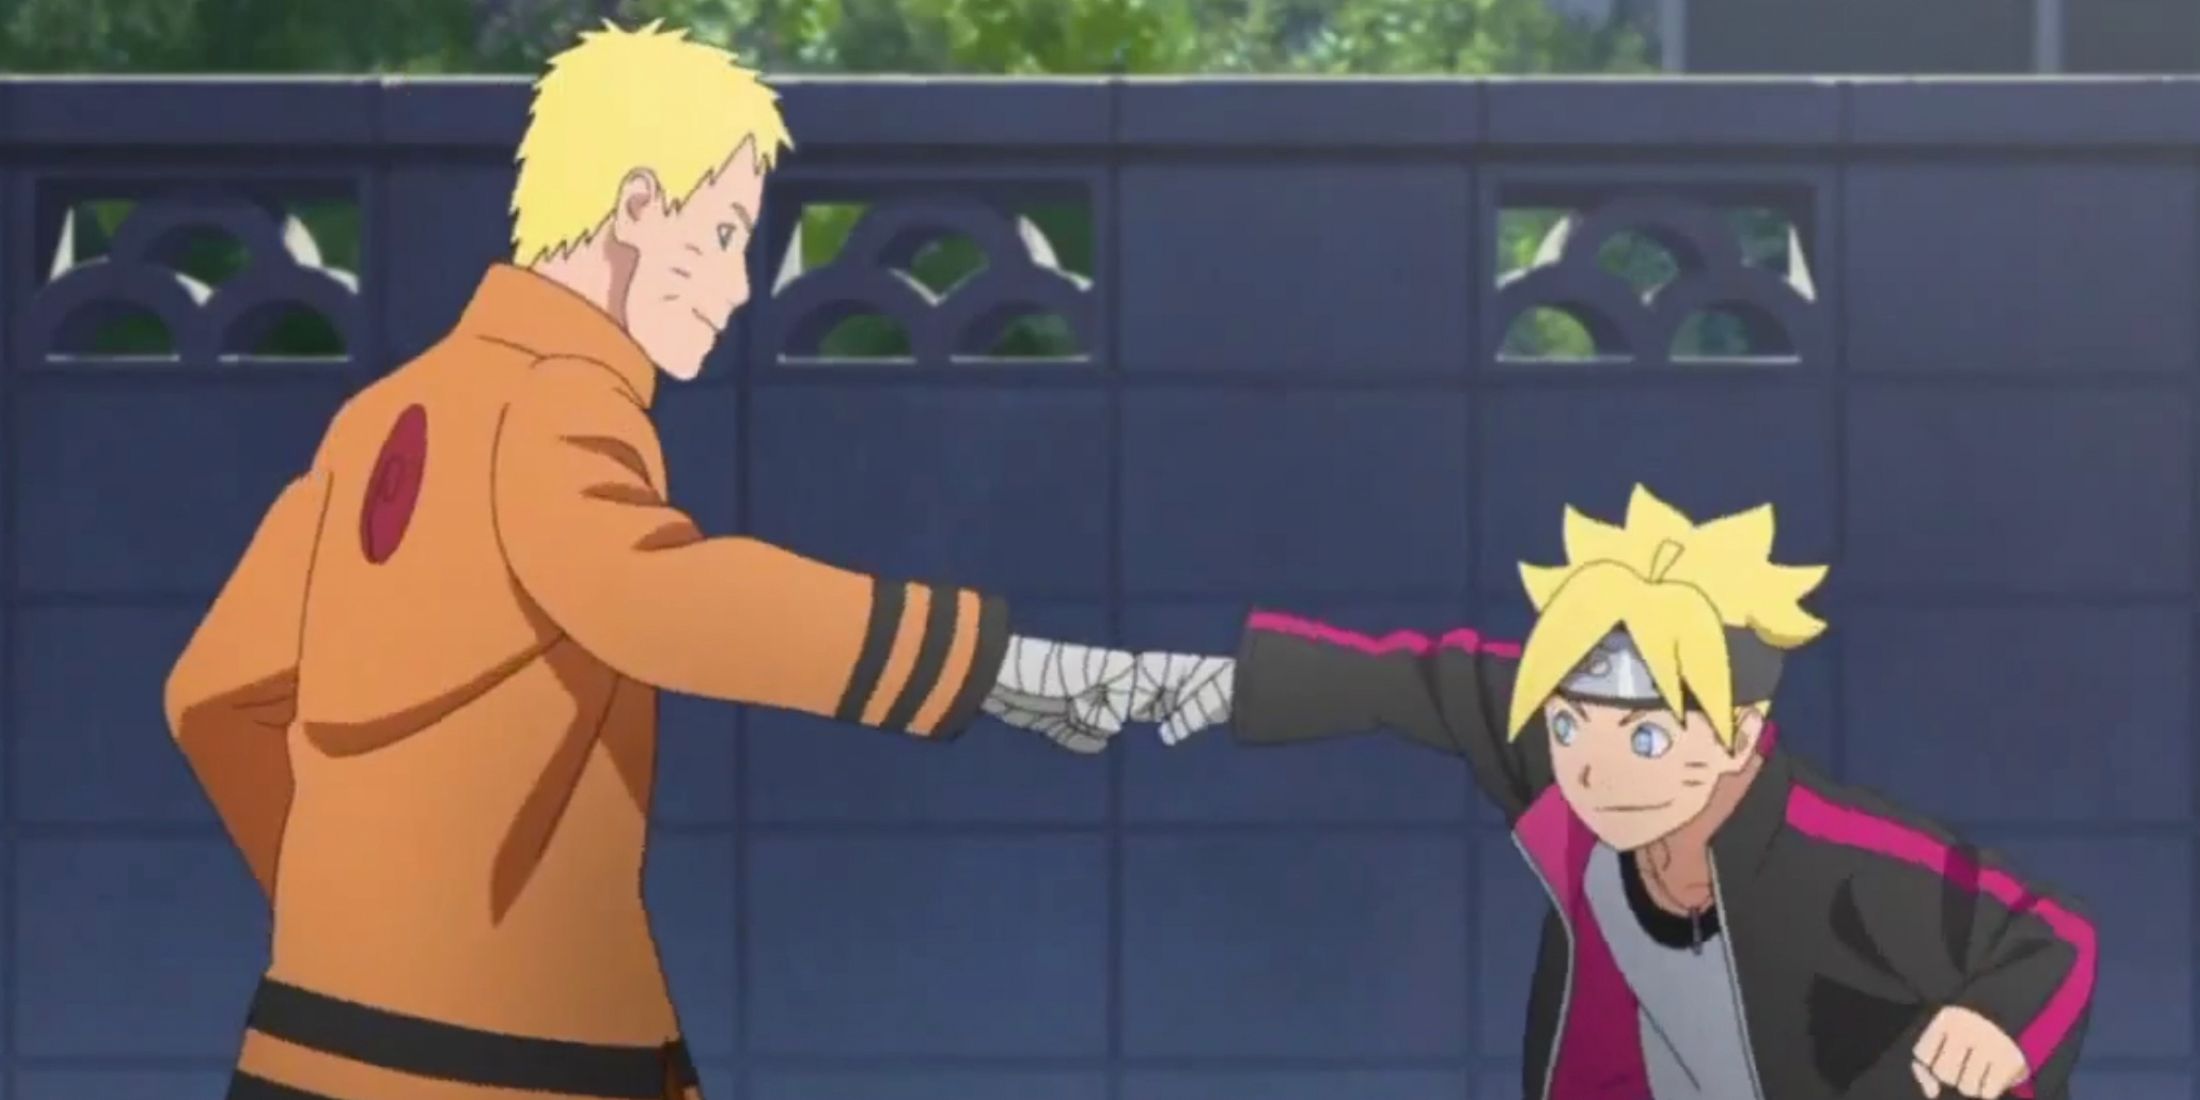 Naruto and Boruto fistbump in the Boruto series